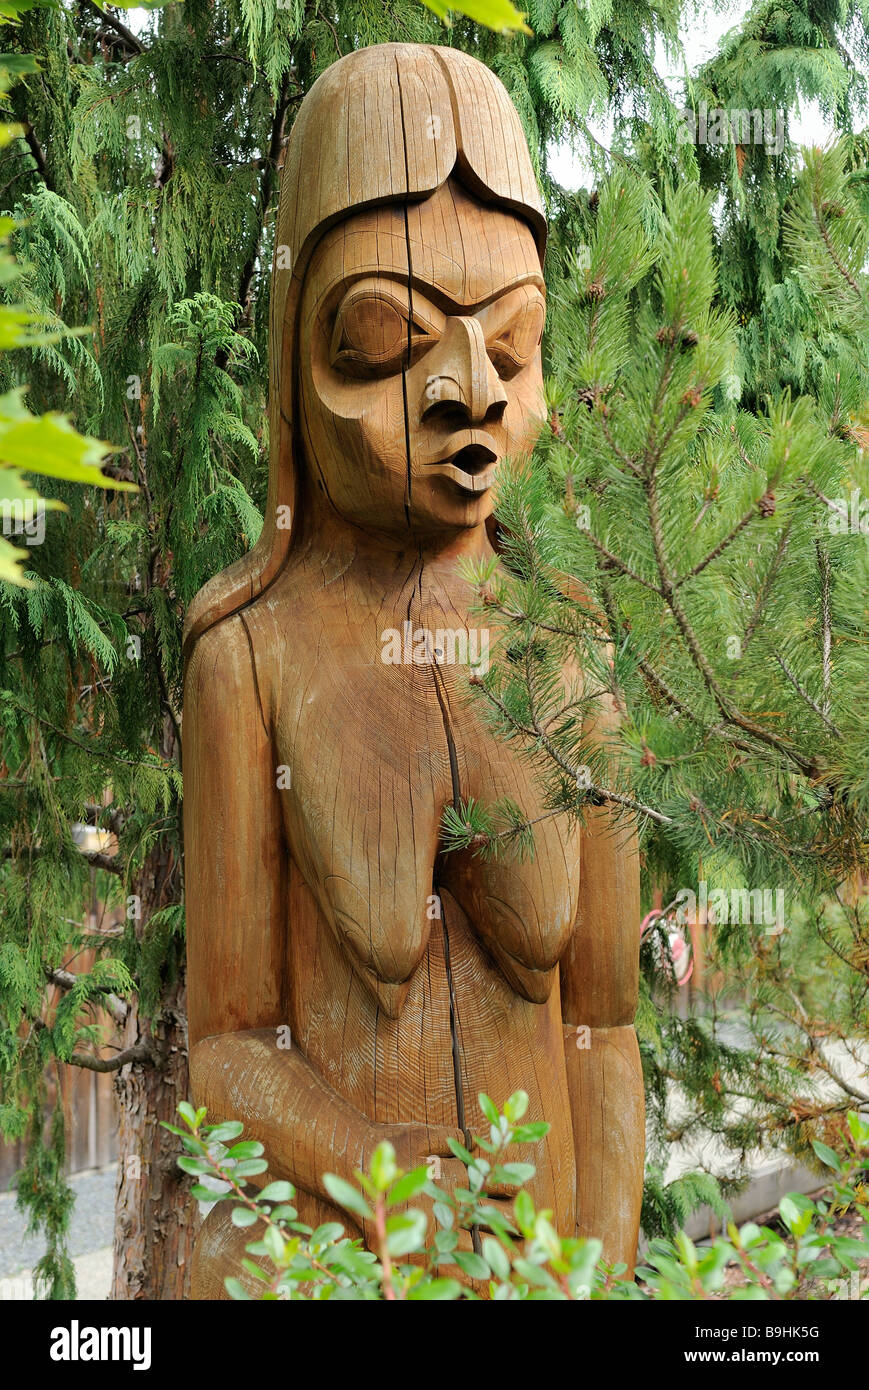 Femme, totem en détail, Duncan, île de Vancouver, Canada, Amérique du Nord Banque D'Images